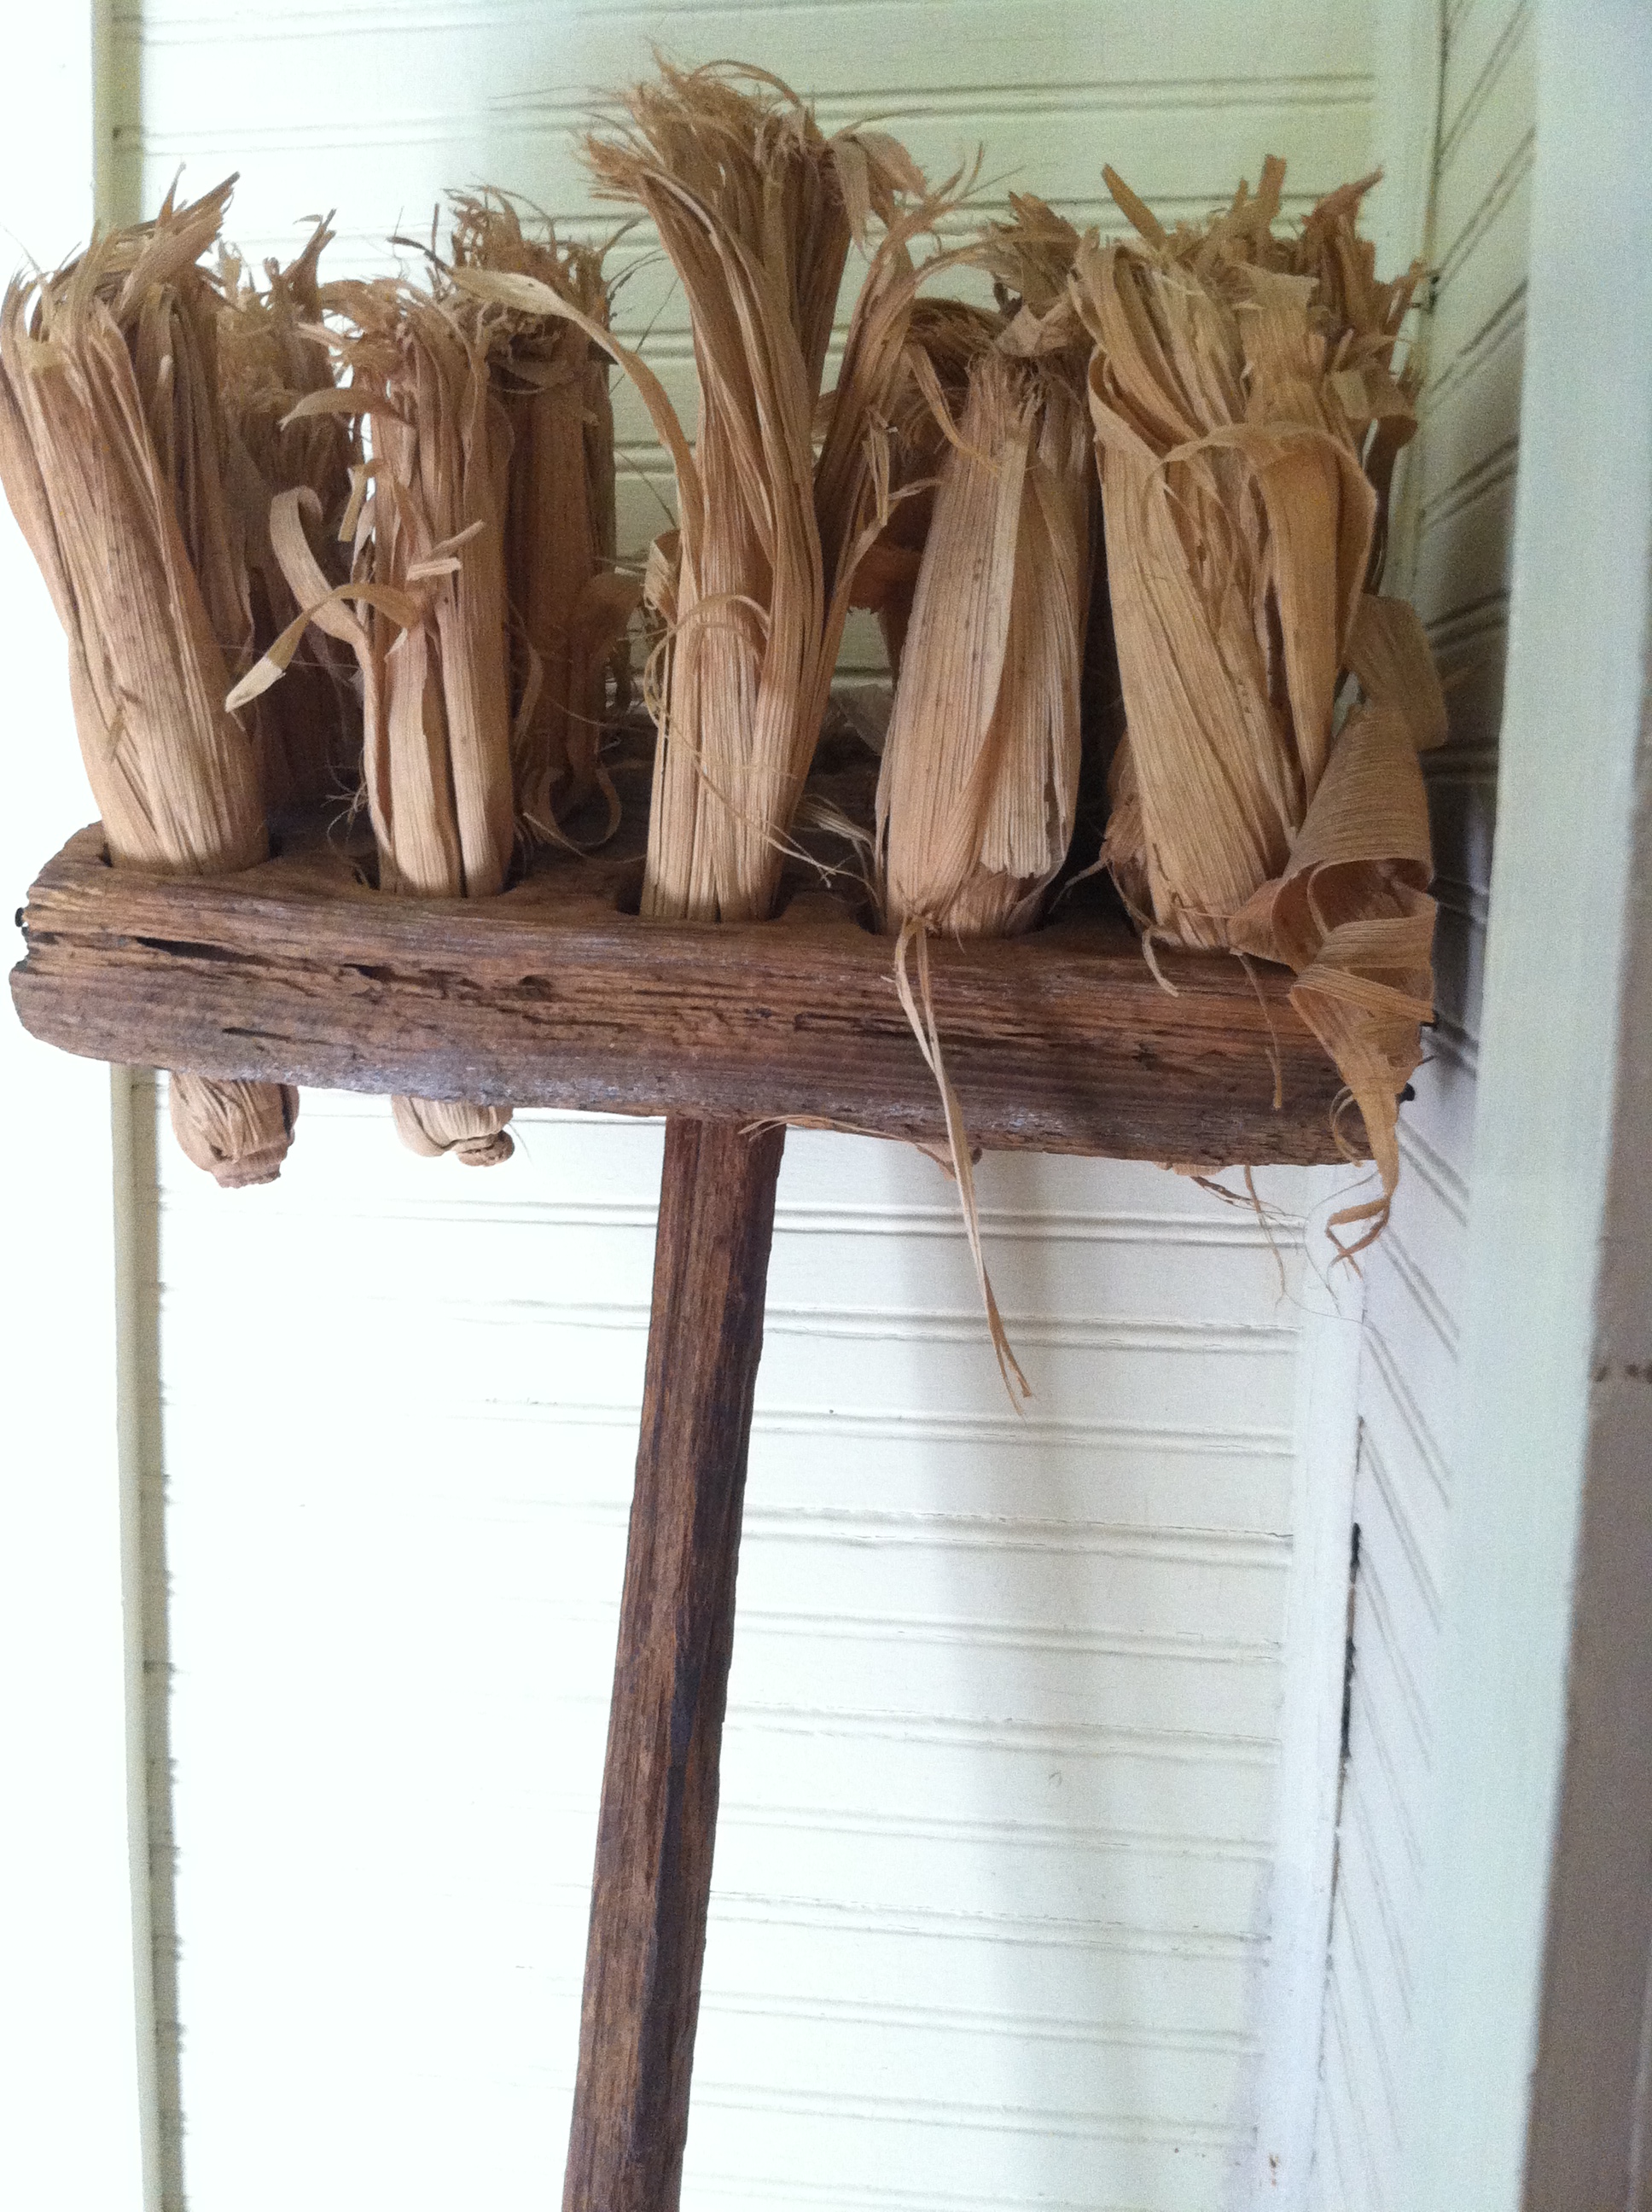 corn husk broom